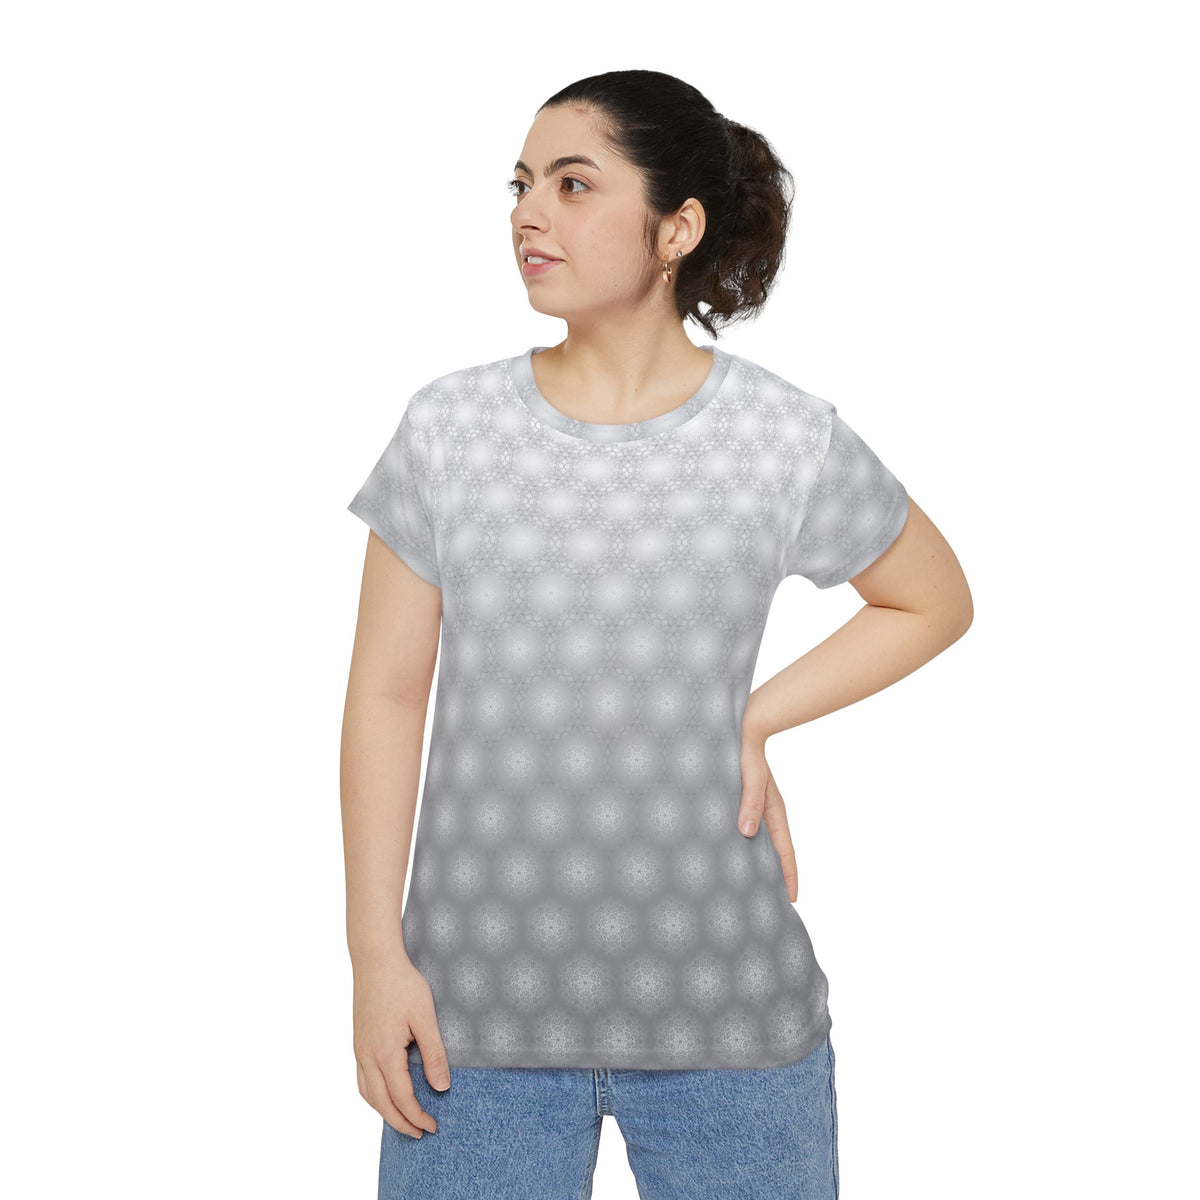 Metatrons Cube Fade - Women's Short Sleeve Shirt